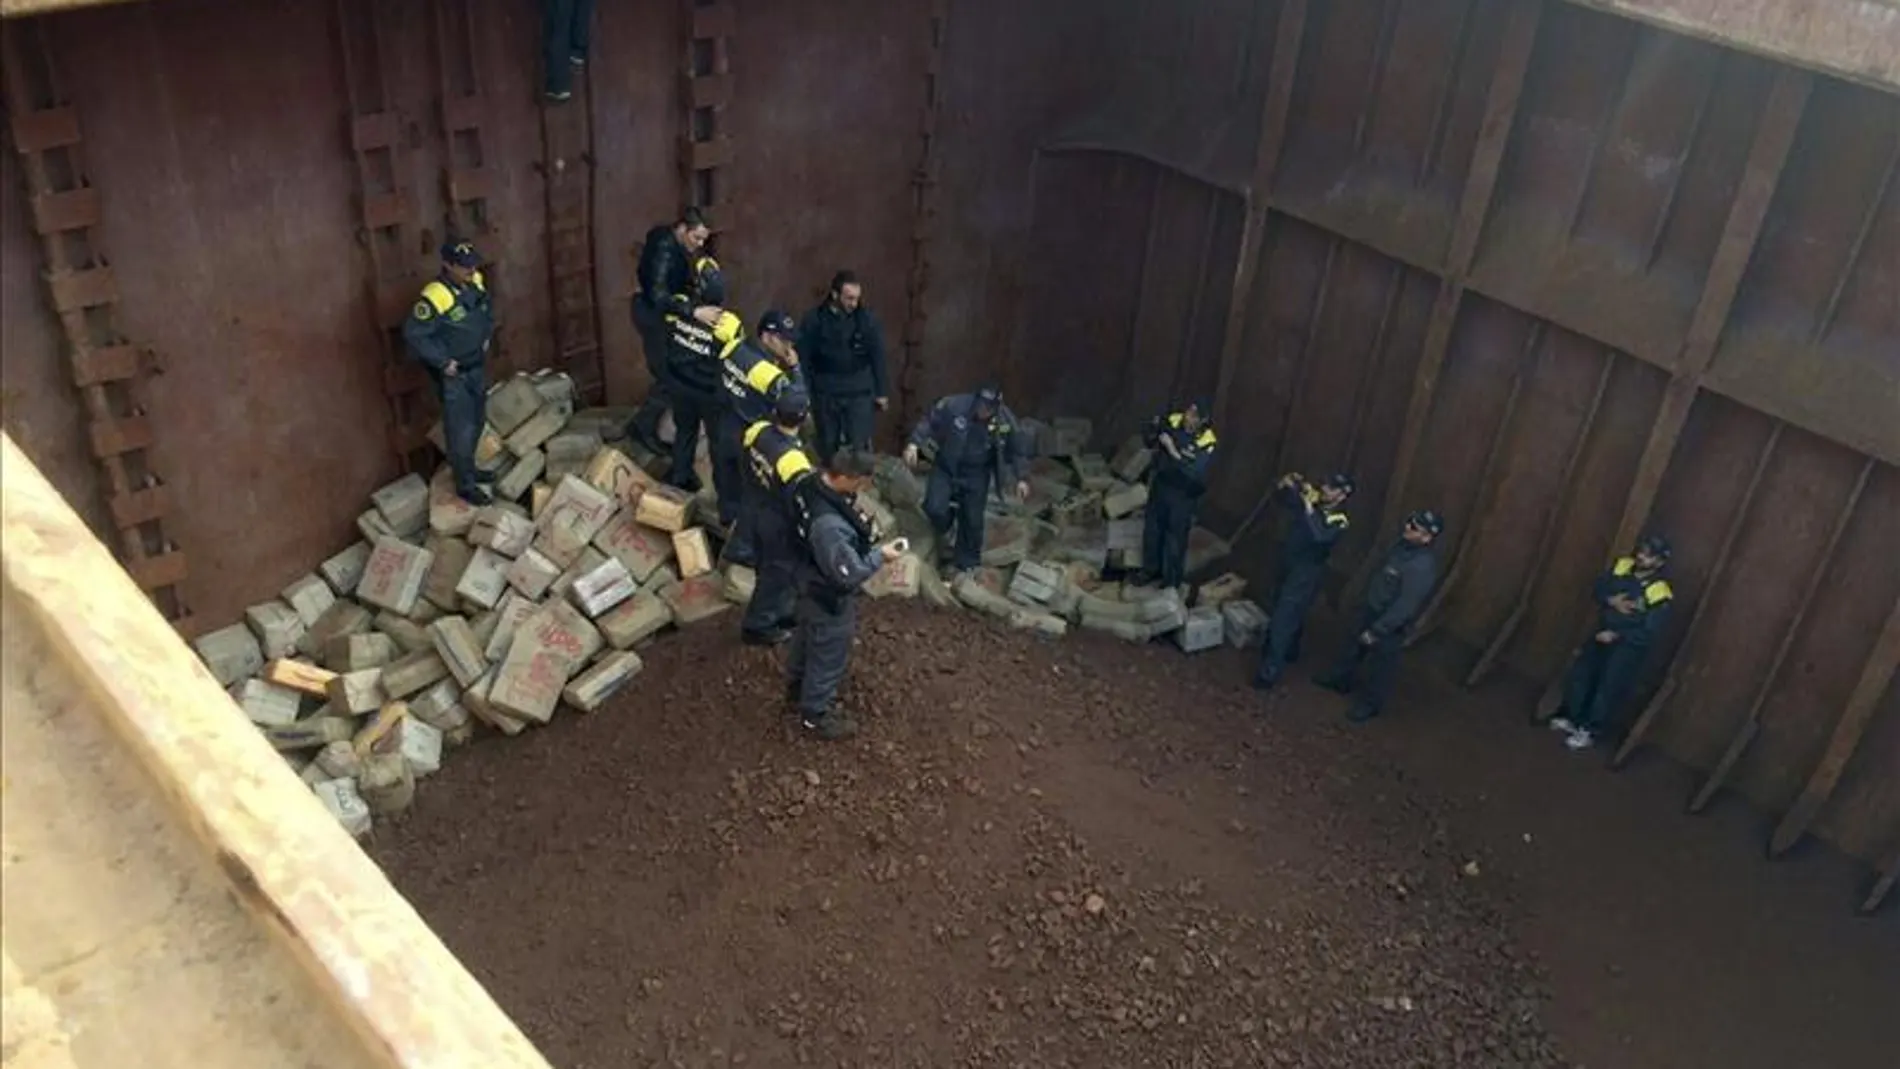   Incautadas 13 toneladas de hachís en Italia en una operación de varios países